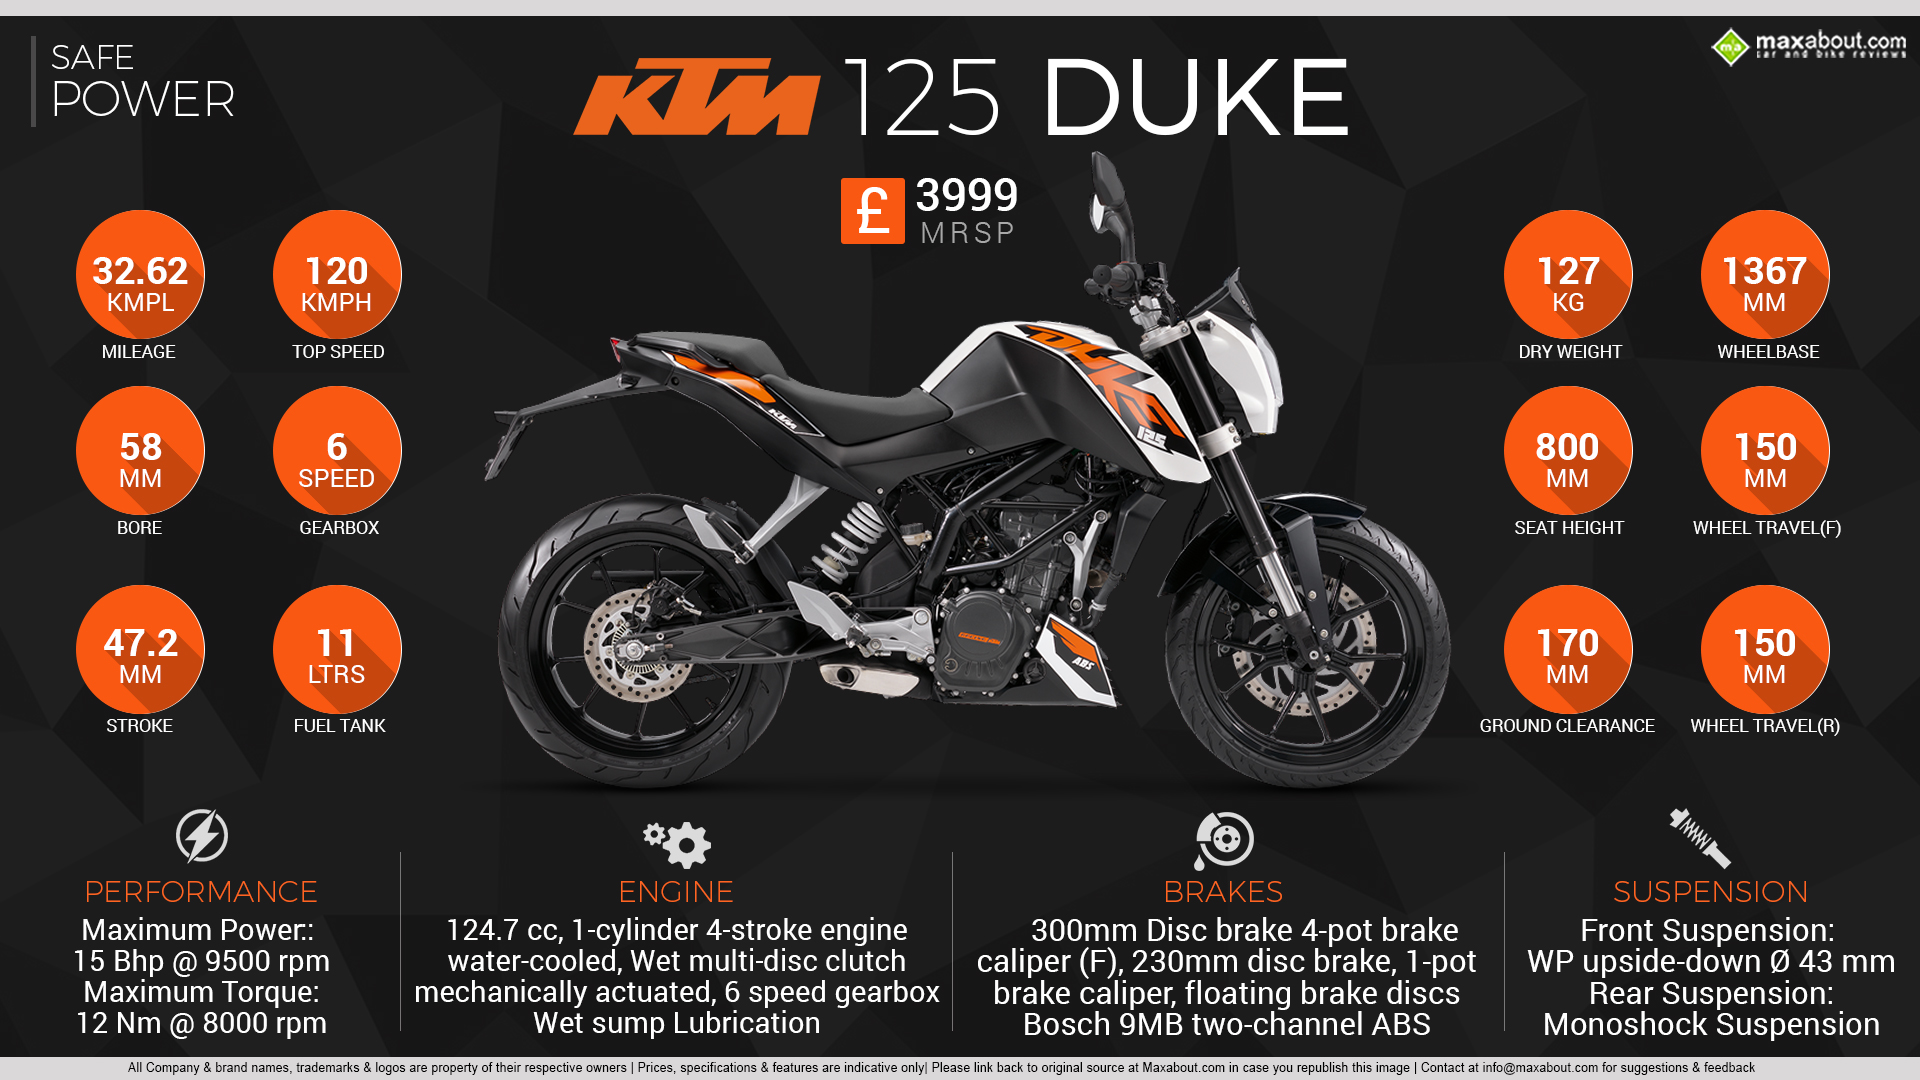 2016 KTM 125 Duke ABS: Safe Power